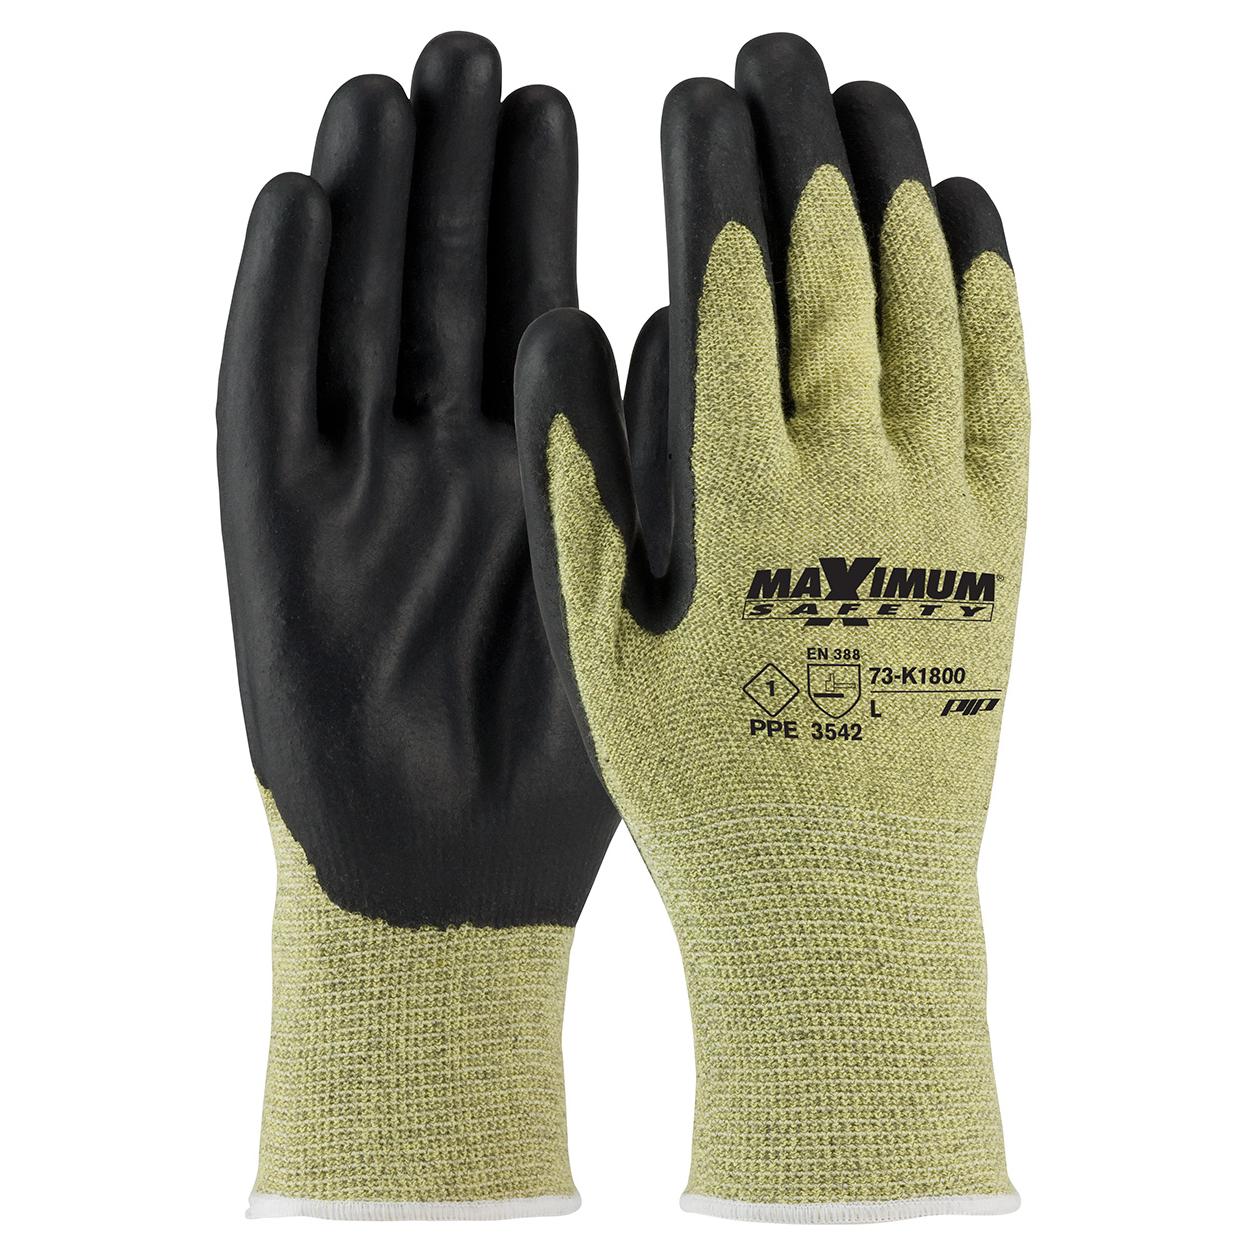 Hyper Tough HPPE ANSI A4 Anti Cut PU Coated Work Gloves, Full Fingers,  Men's Medium Size 